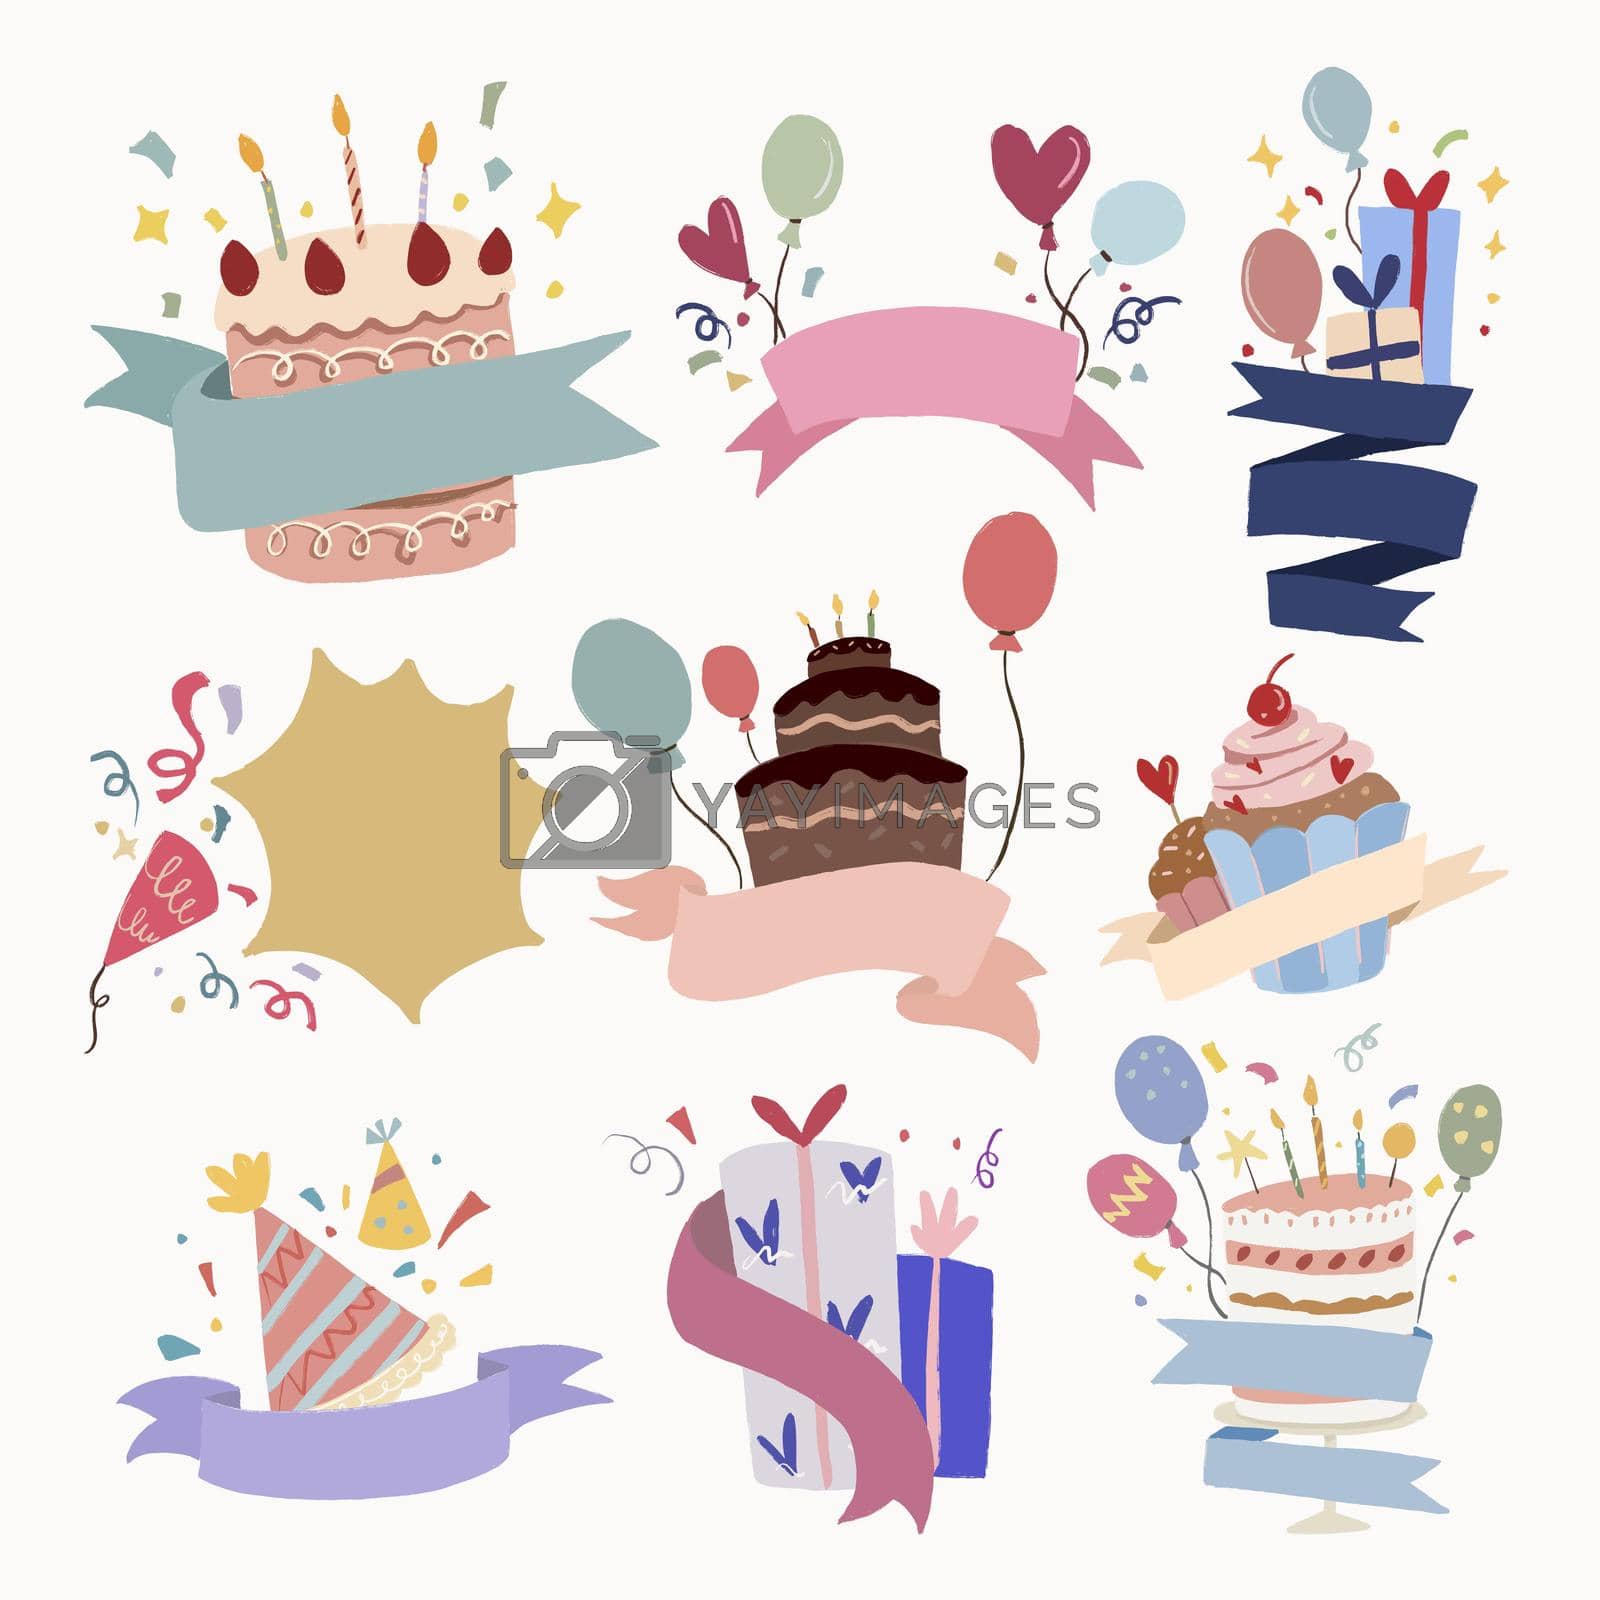 Celebration party, celebration illustration vector set